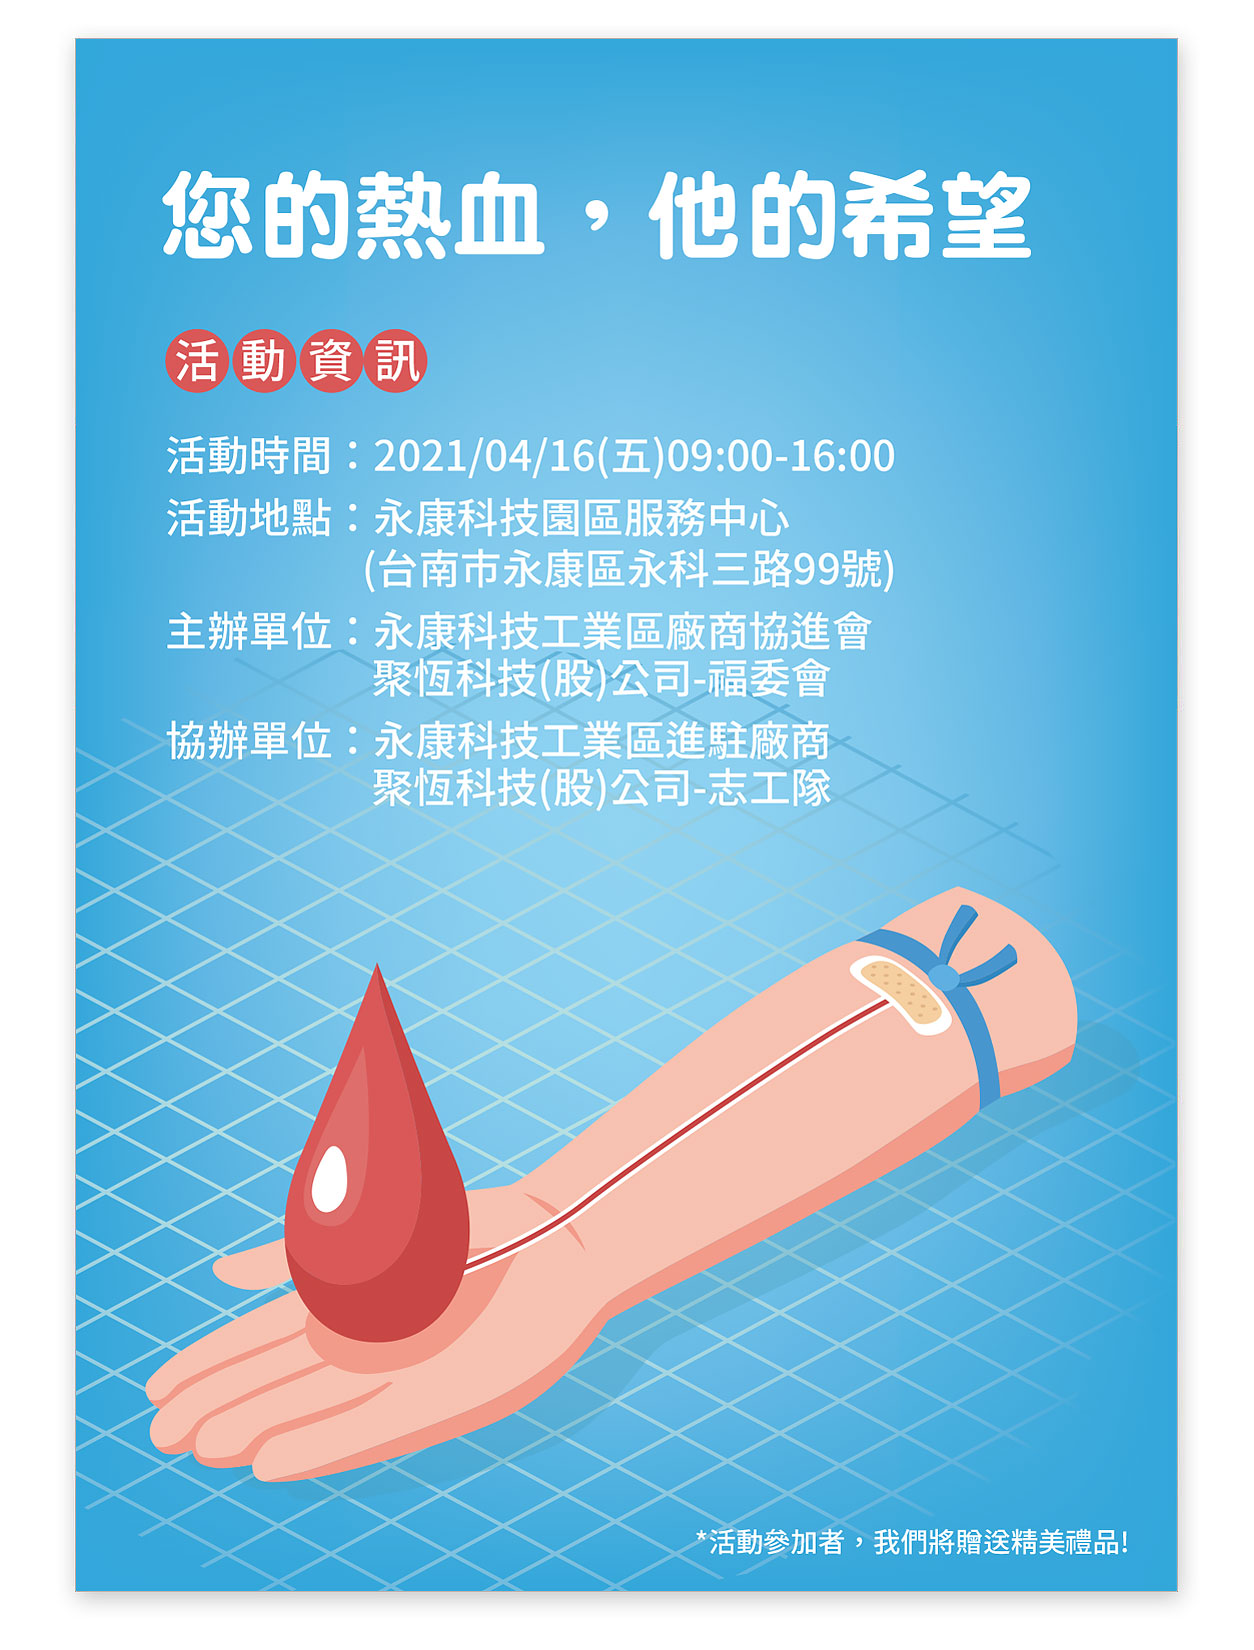 聚恆科技將於04/16(五)與永康科技工業區廠商協進會聯合舉辦捐血活動